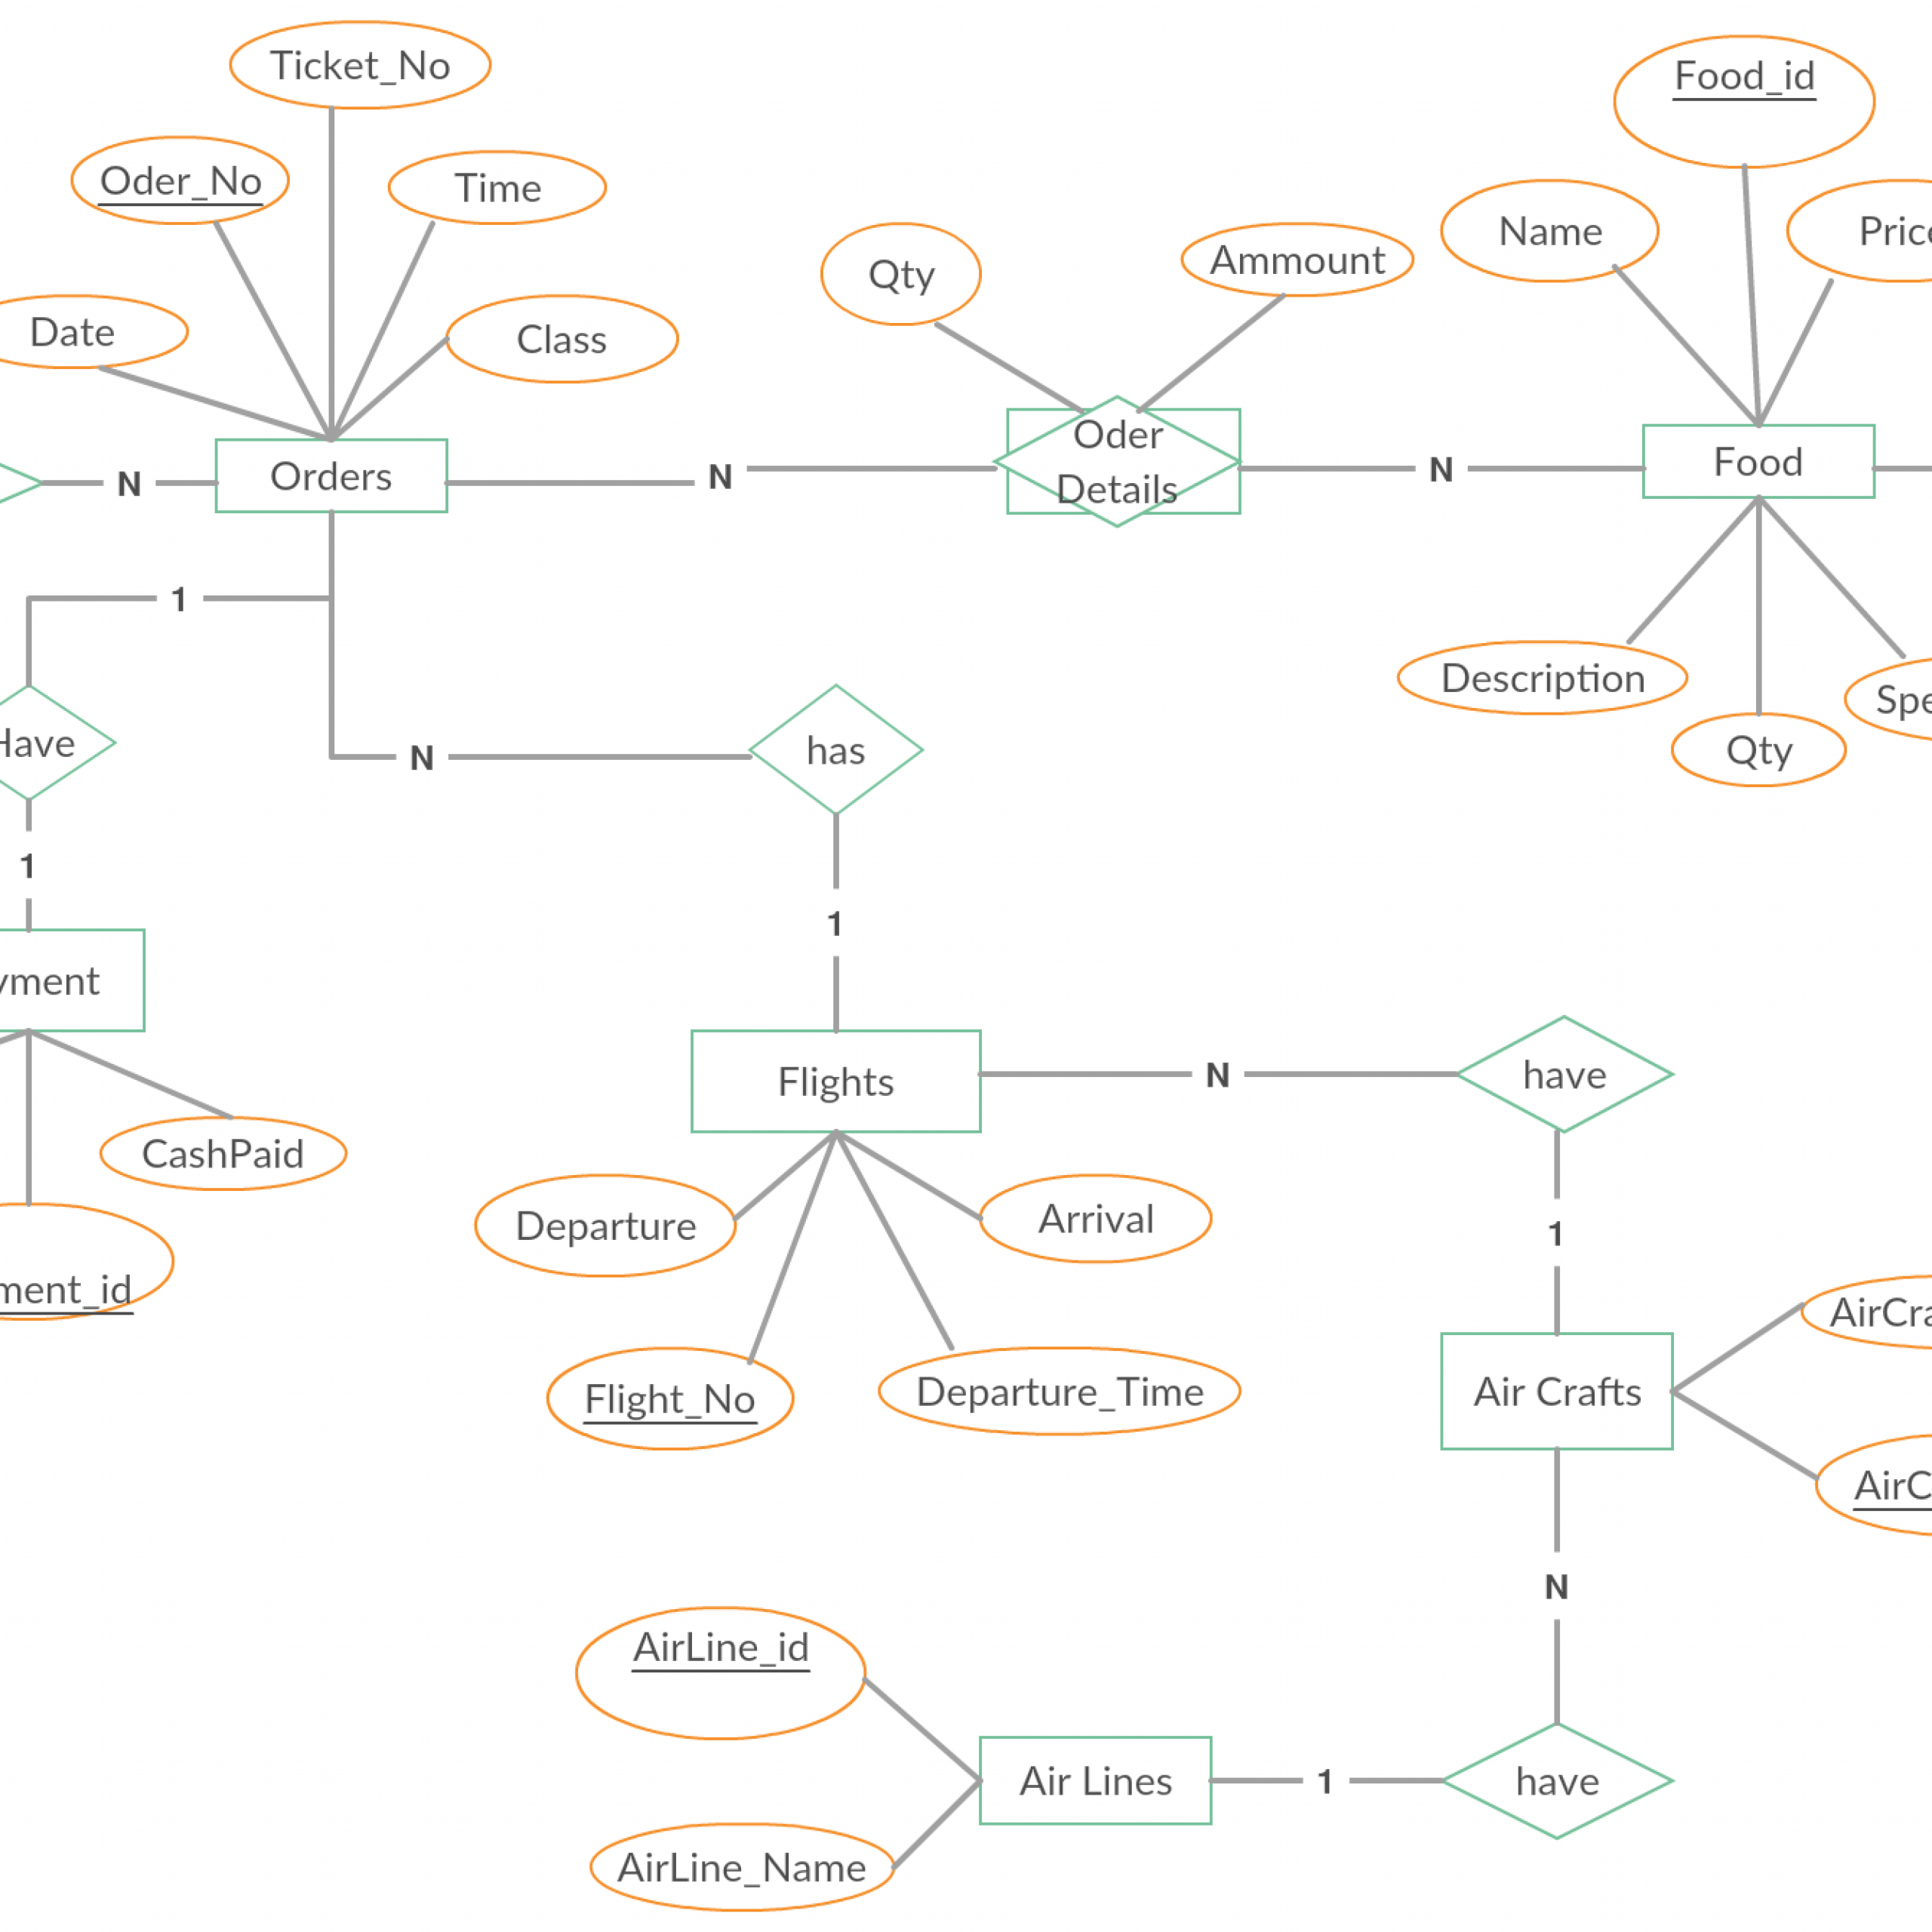 Entity Relationship Diagram (Er Diagram) Of Food Ordering regarding Er Diagram Relationship Lines